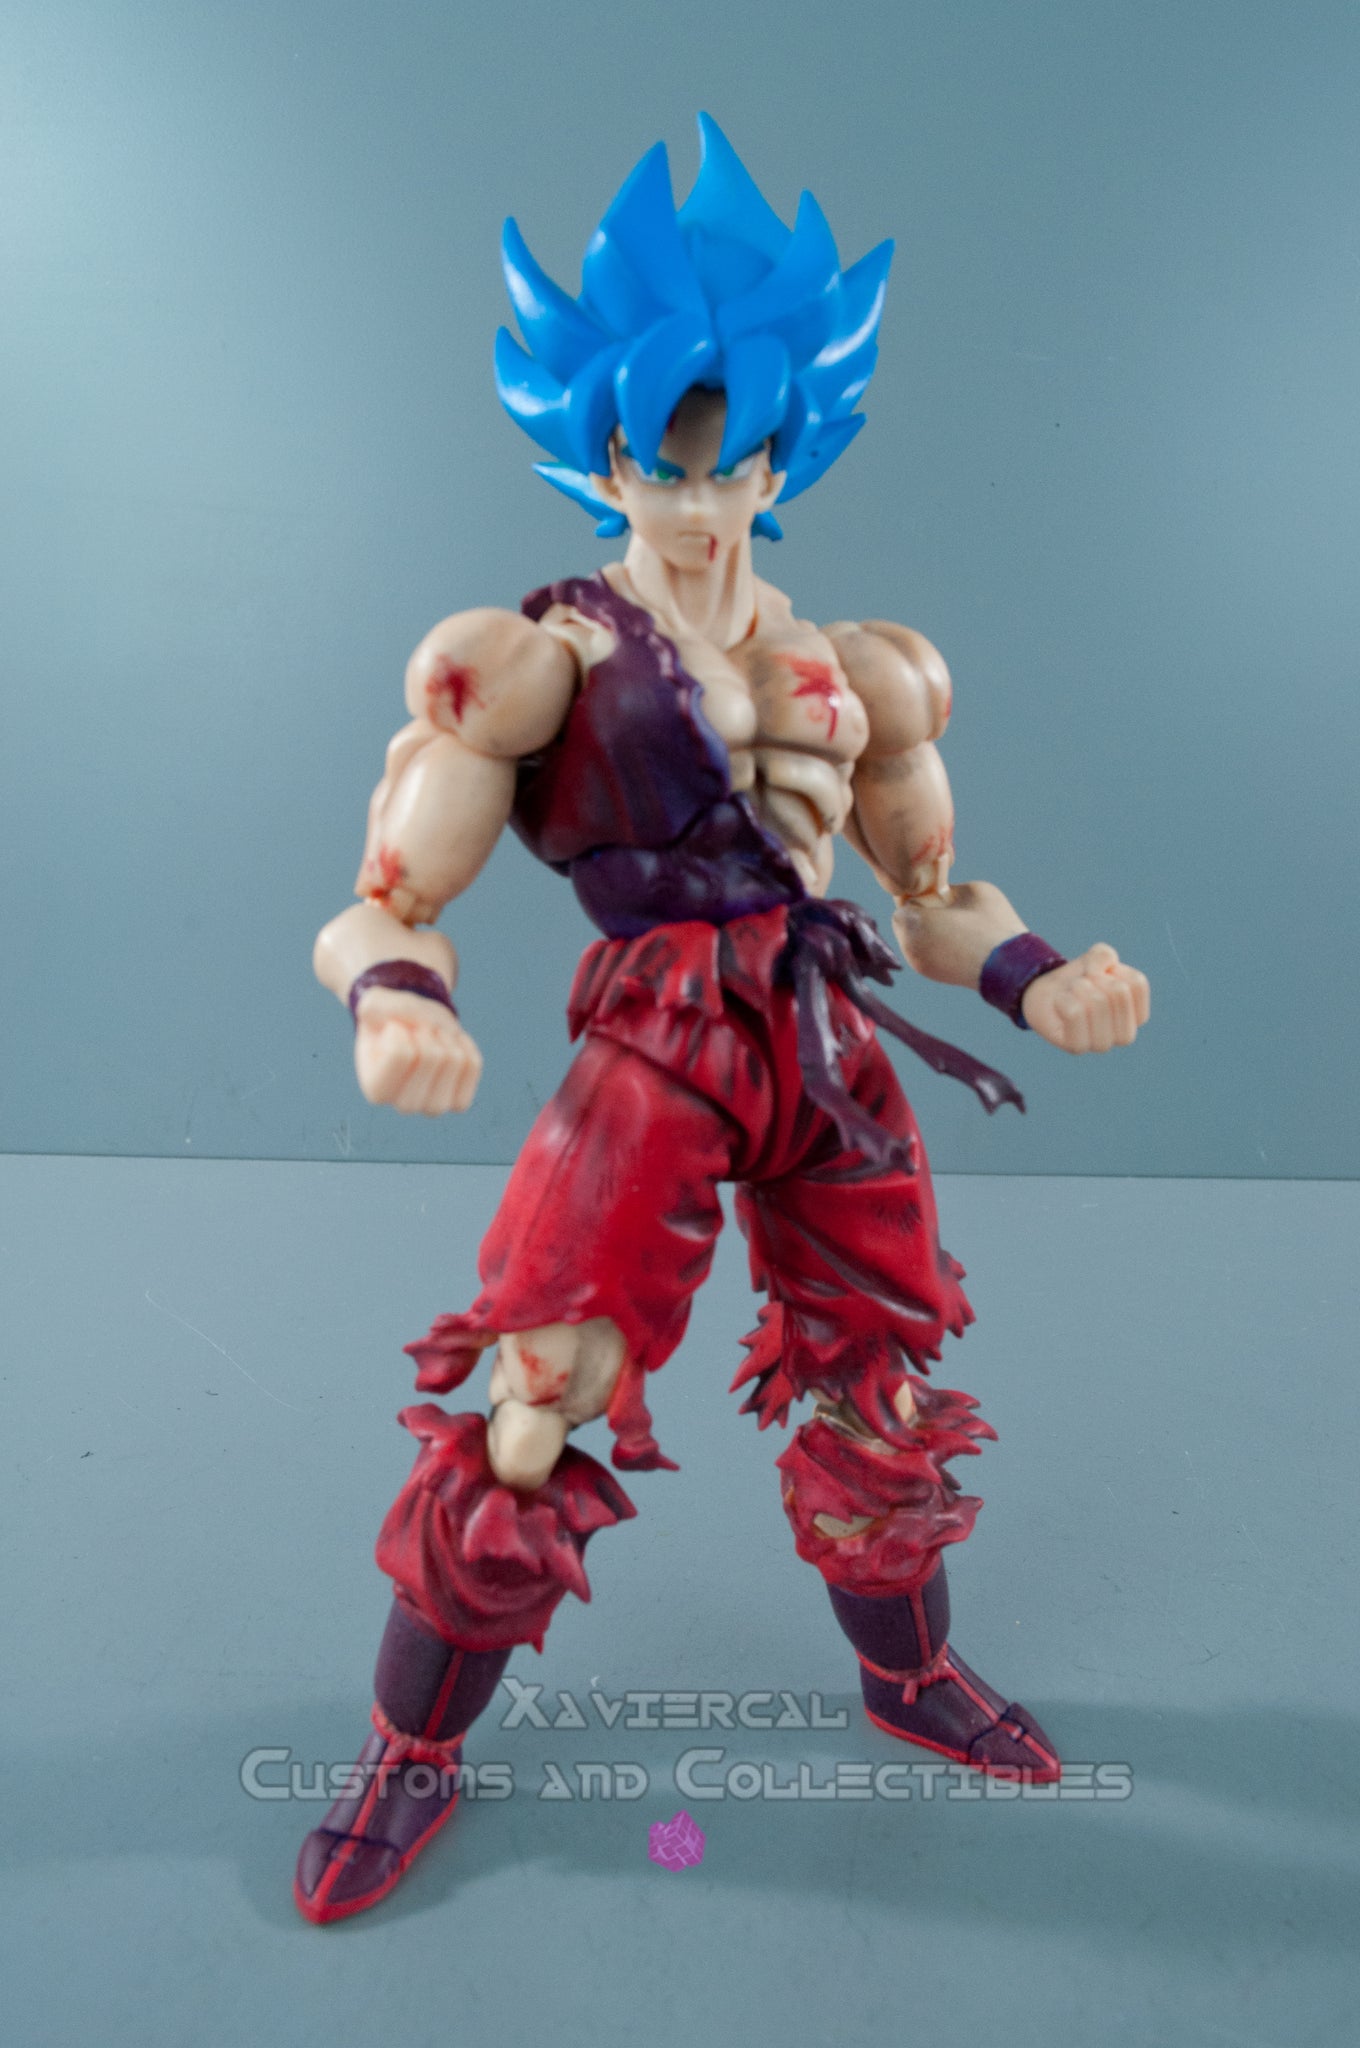 Sh Figuarts Super Saiyan Blue Goku, Shf Goku Action Figure, bonecos do goku  ssj4 